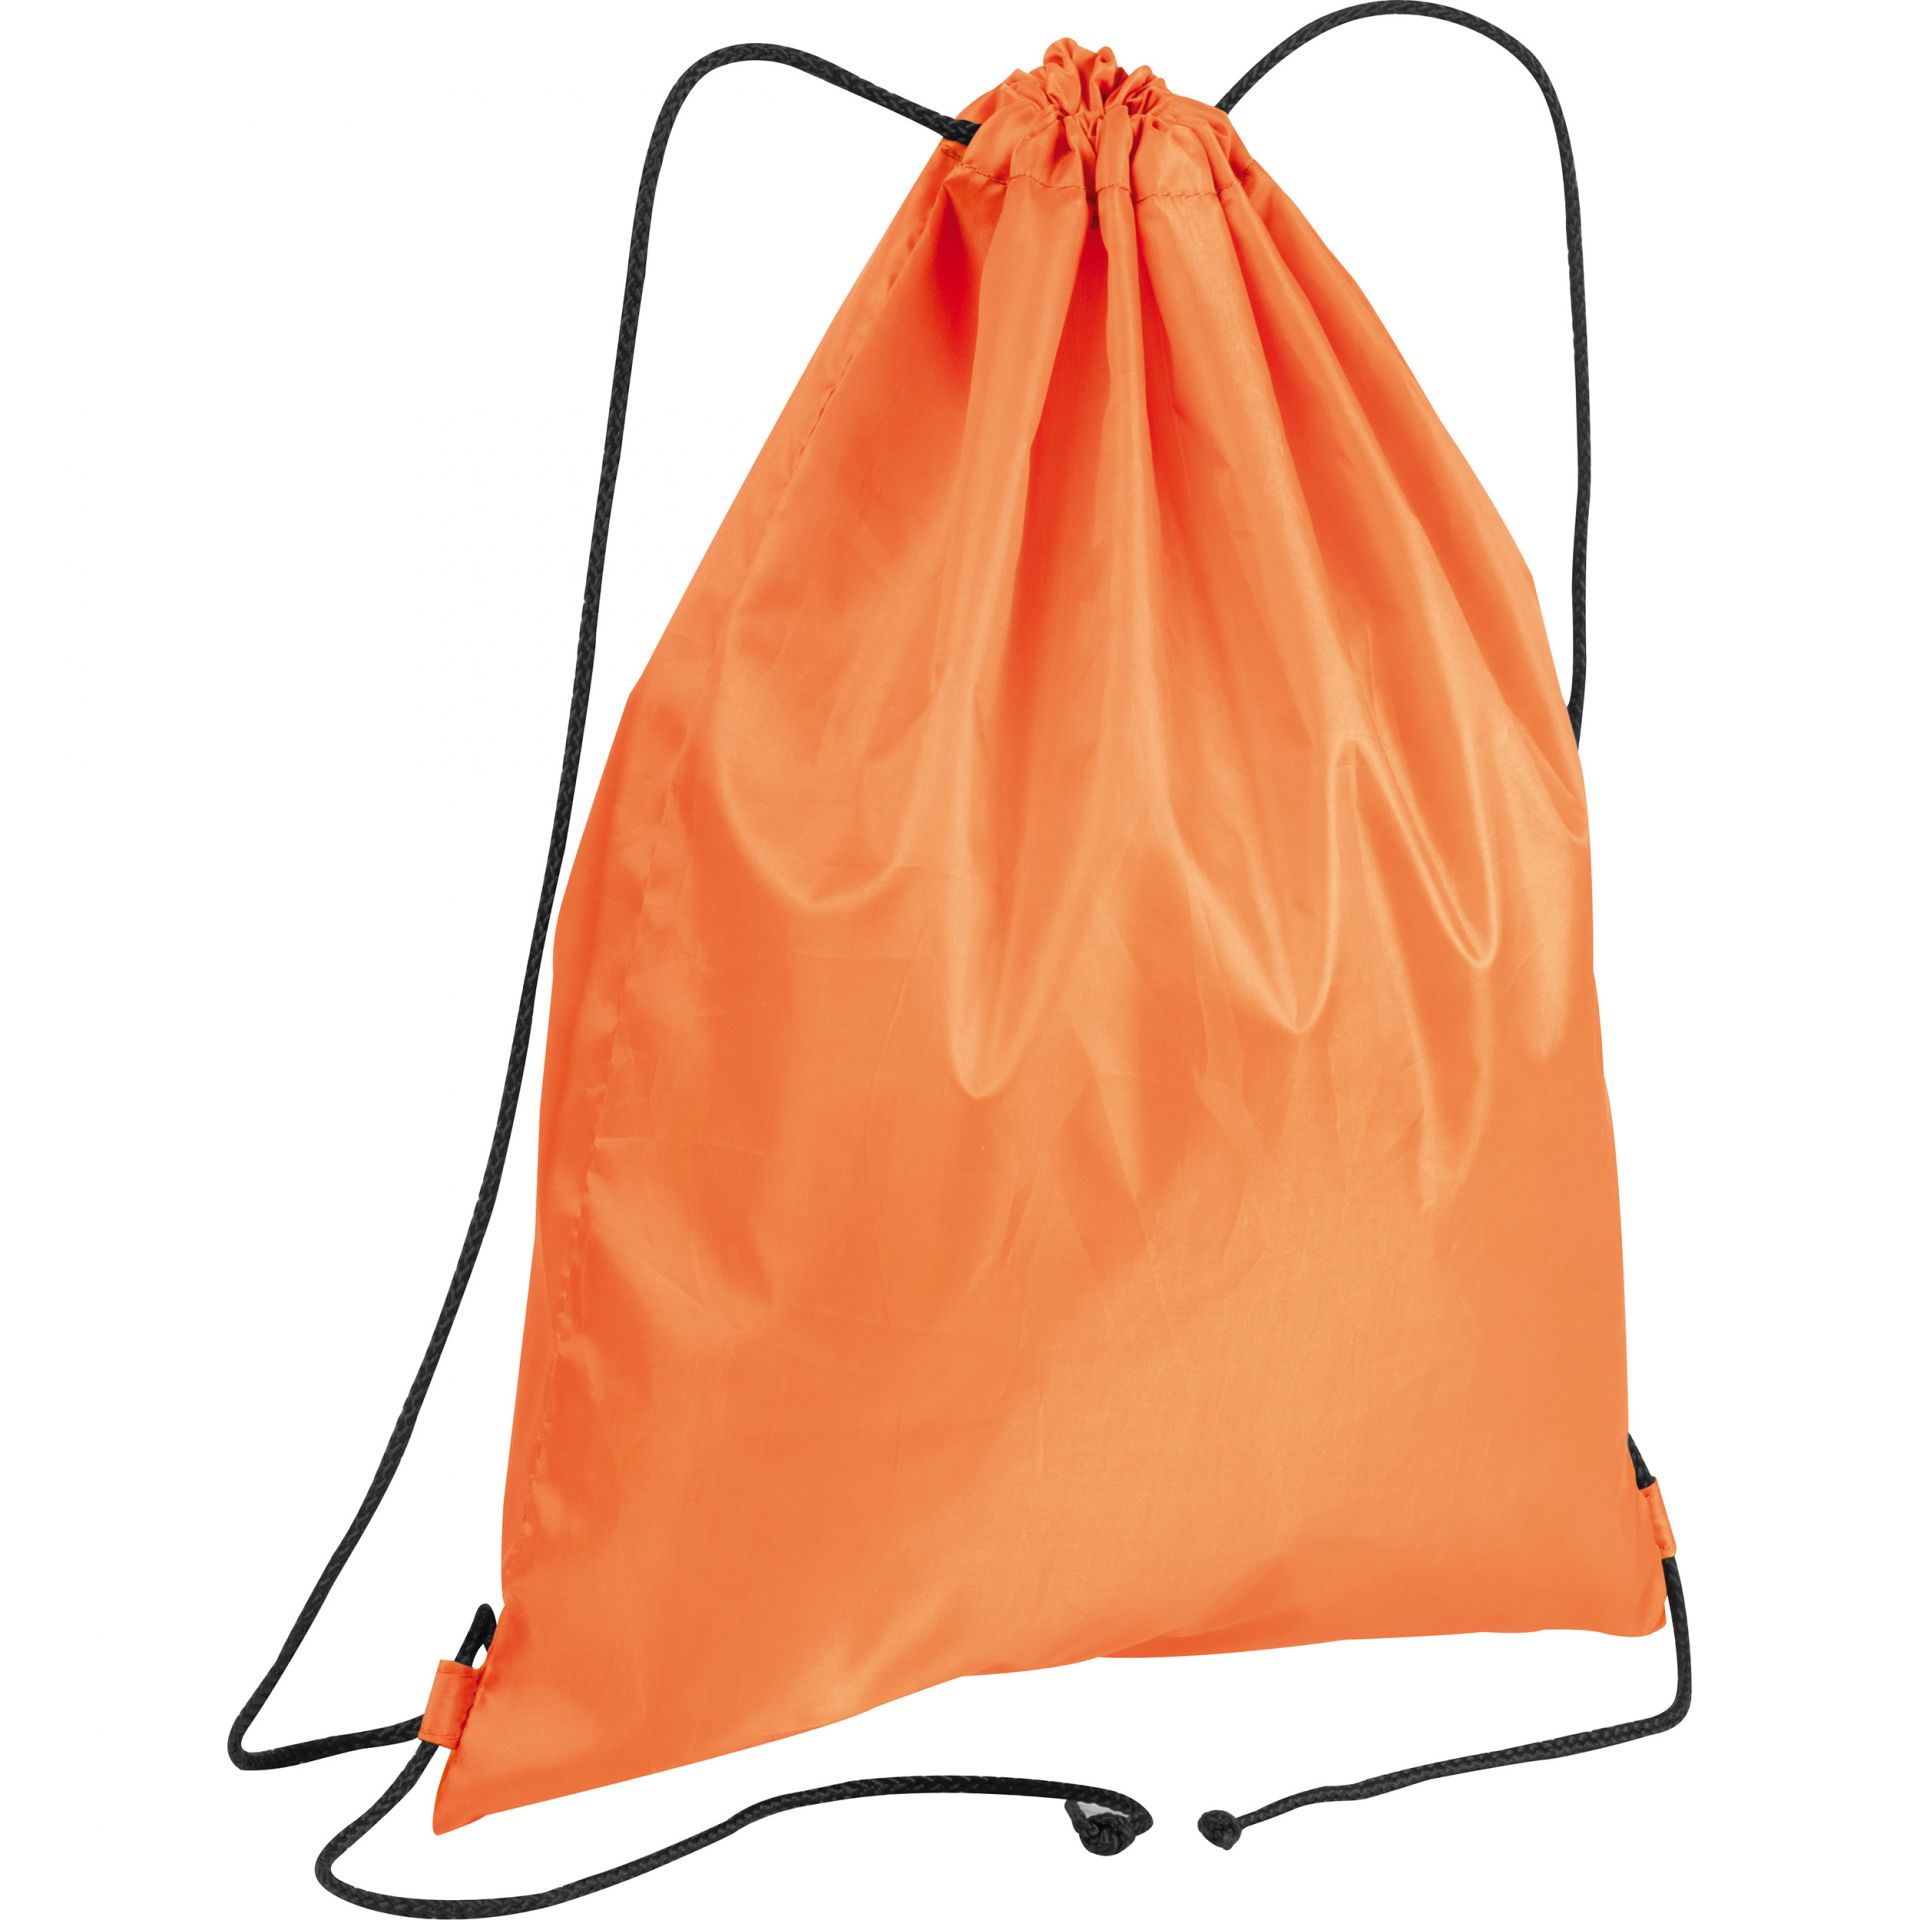 Gym bag made of polyester - Color: Orange